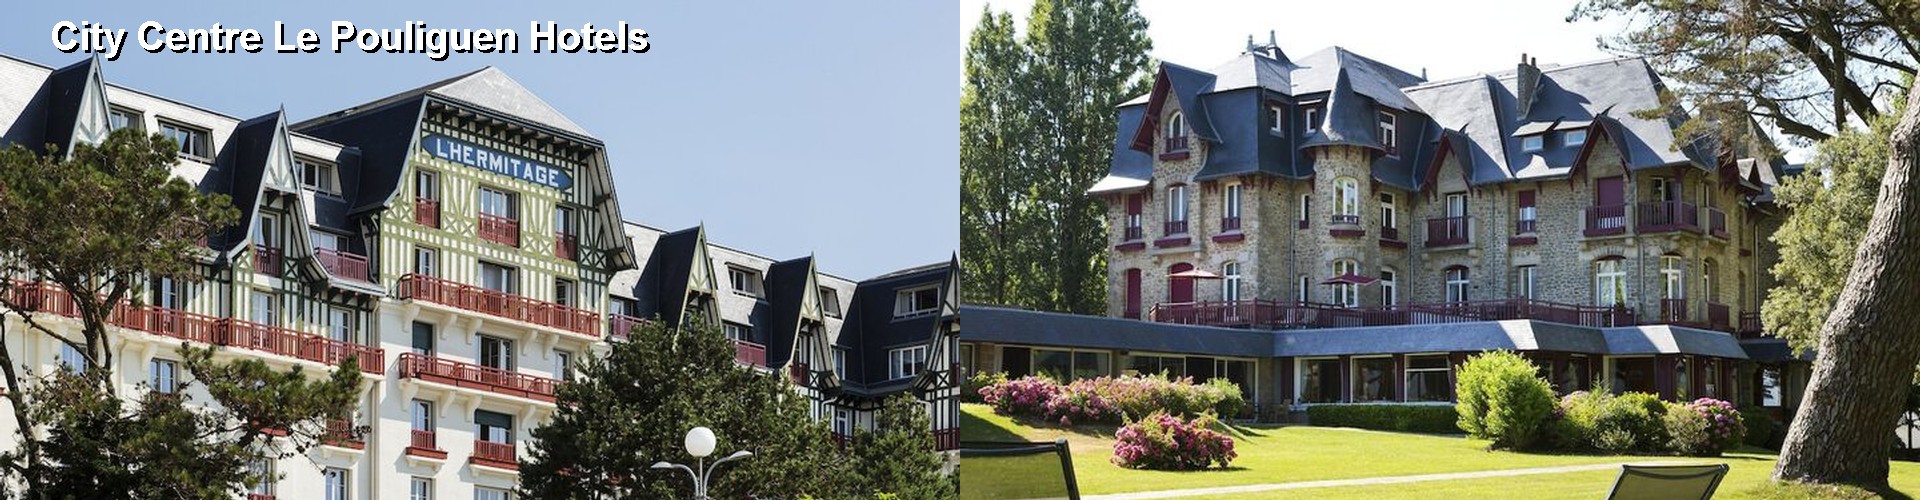 5 Best Hotels near City Centre Le Pouliguen